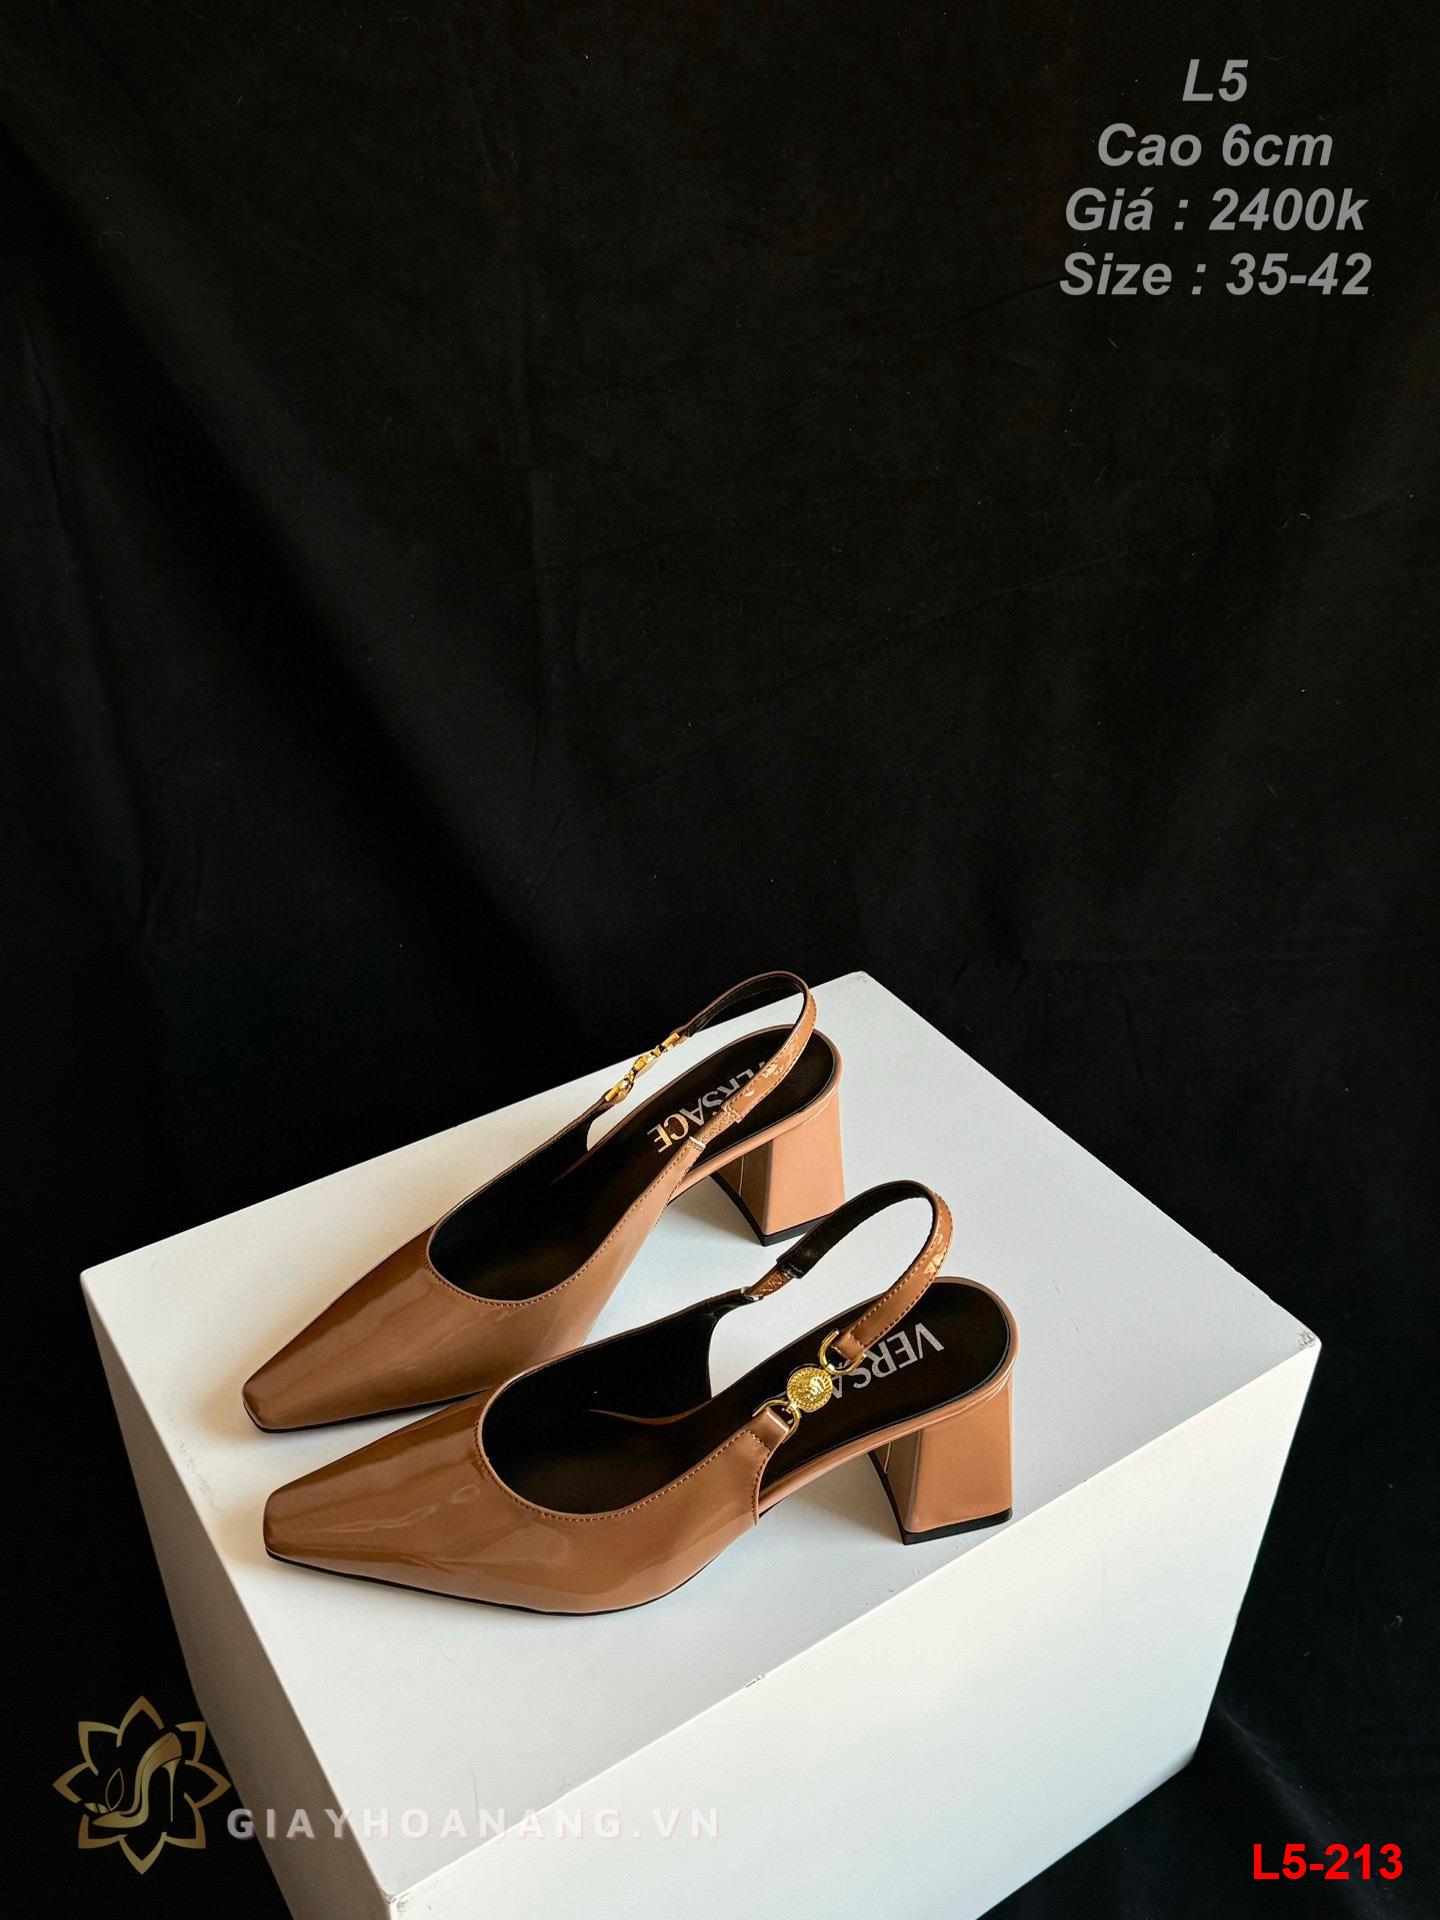 L5-213 Versace sandal cao 6cm siêu cấp